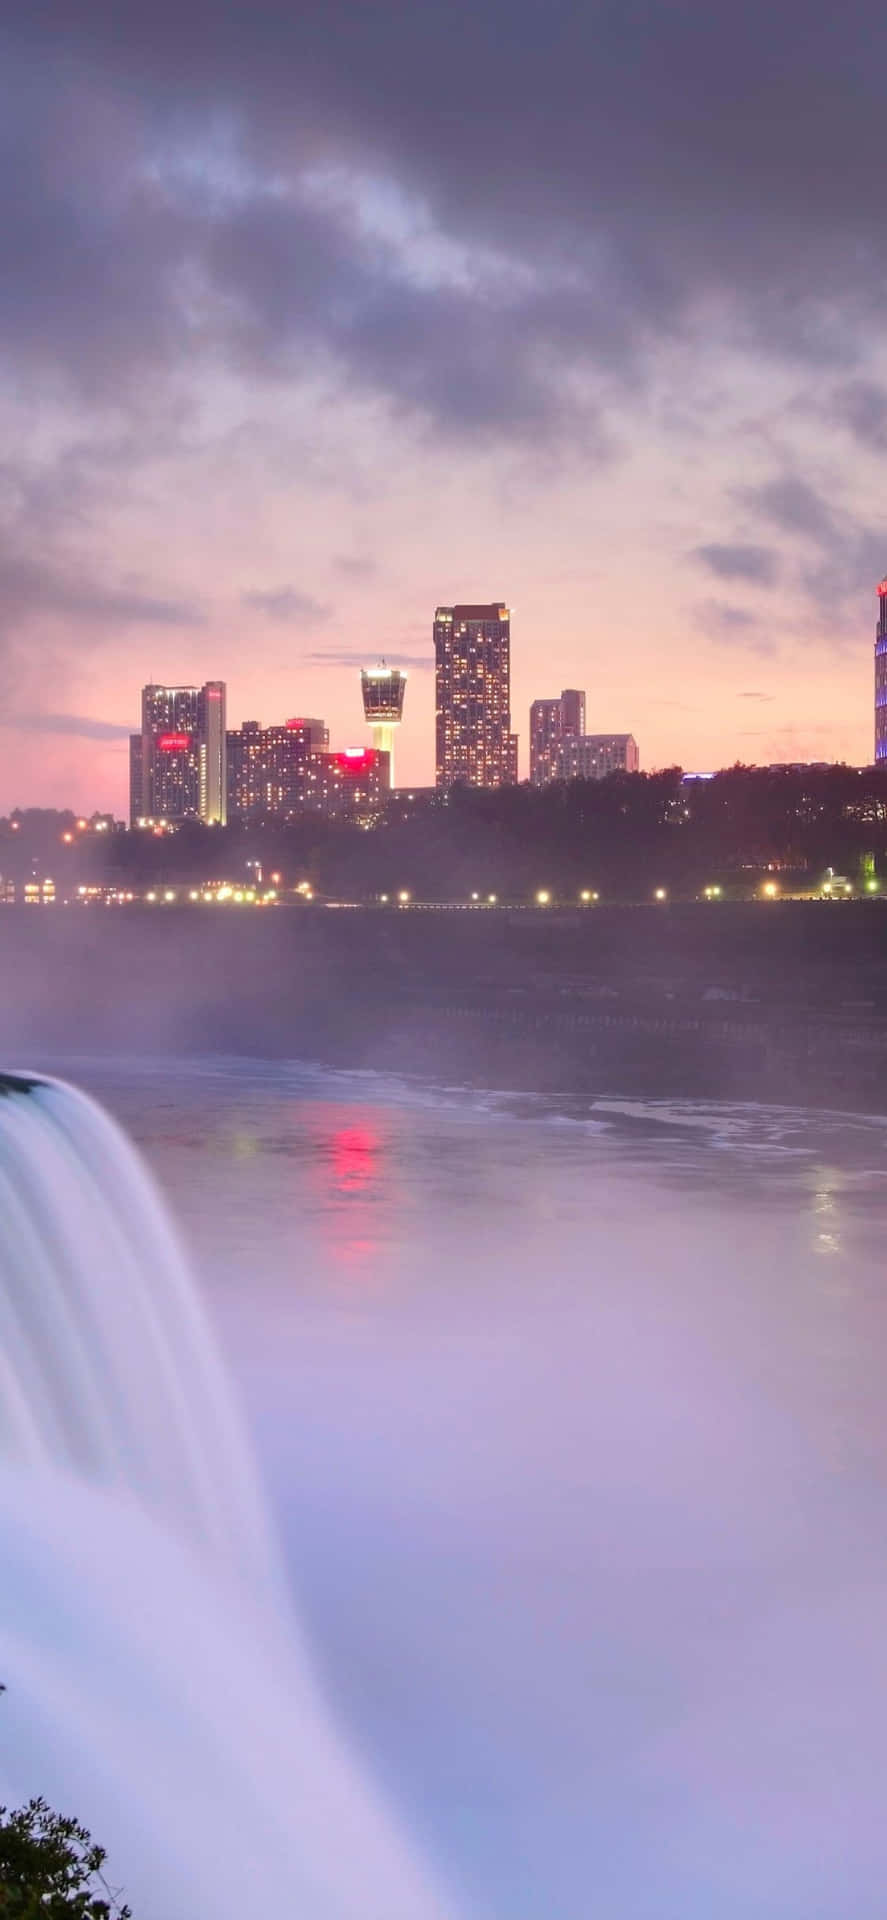 Iphonex Bakgrundsbild Med Niagara Falls Och Byggnader.